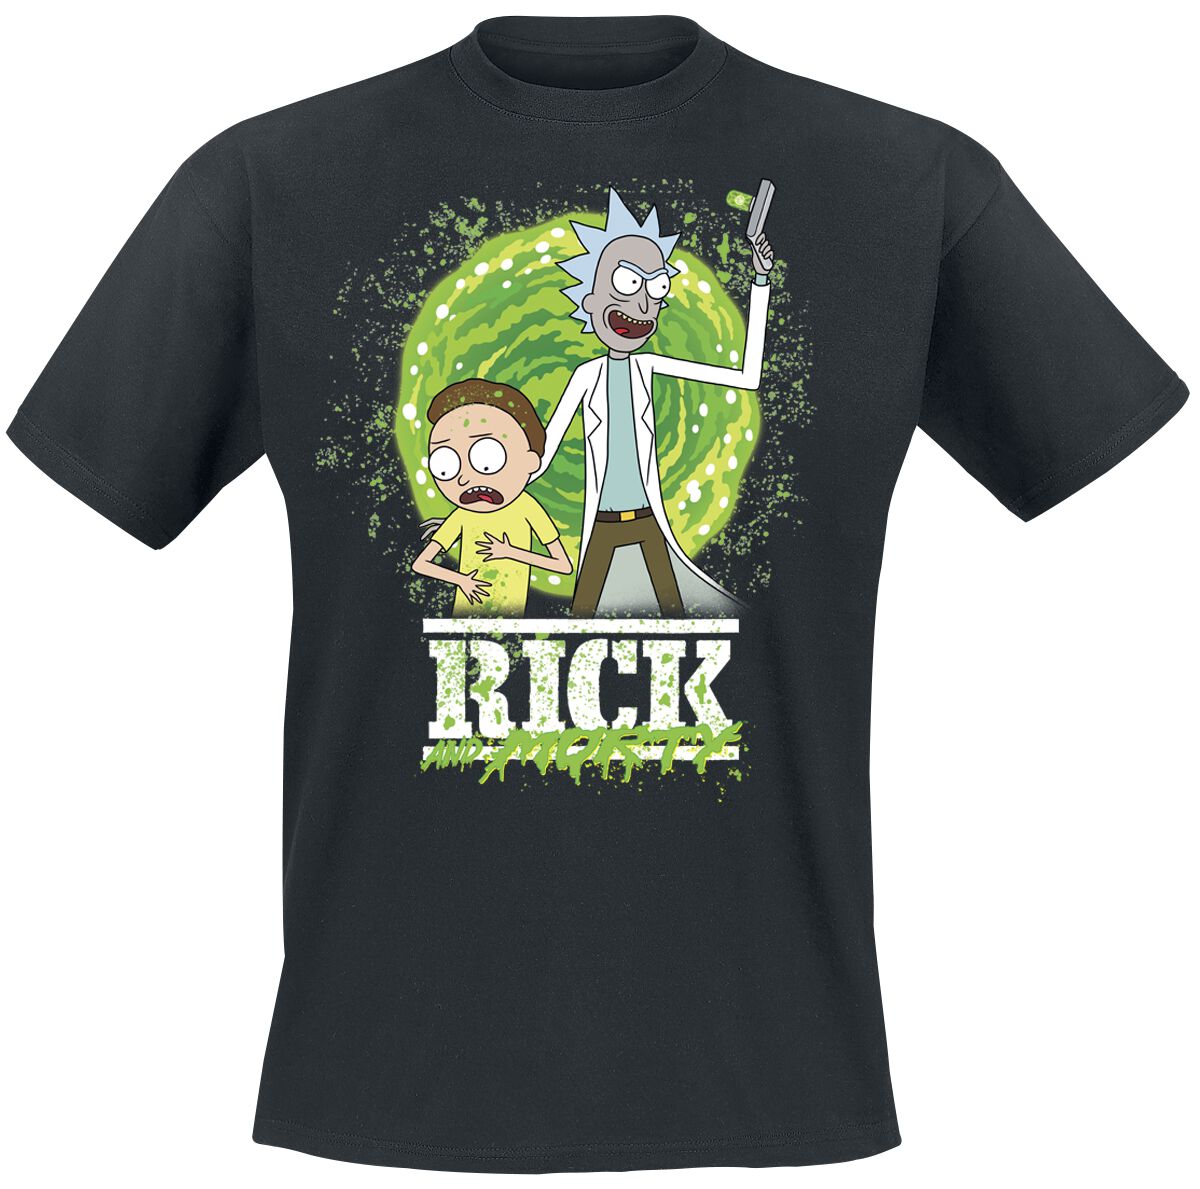 Rick And Morty T-Shirt - Season 6 - S bis XXL - für Männer - Größe L - schwarz  - Lizenzierter Fanartikel von Rick And Morty